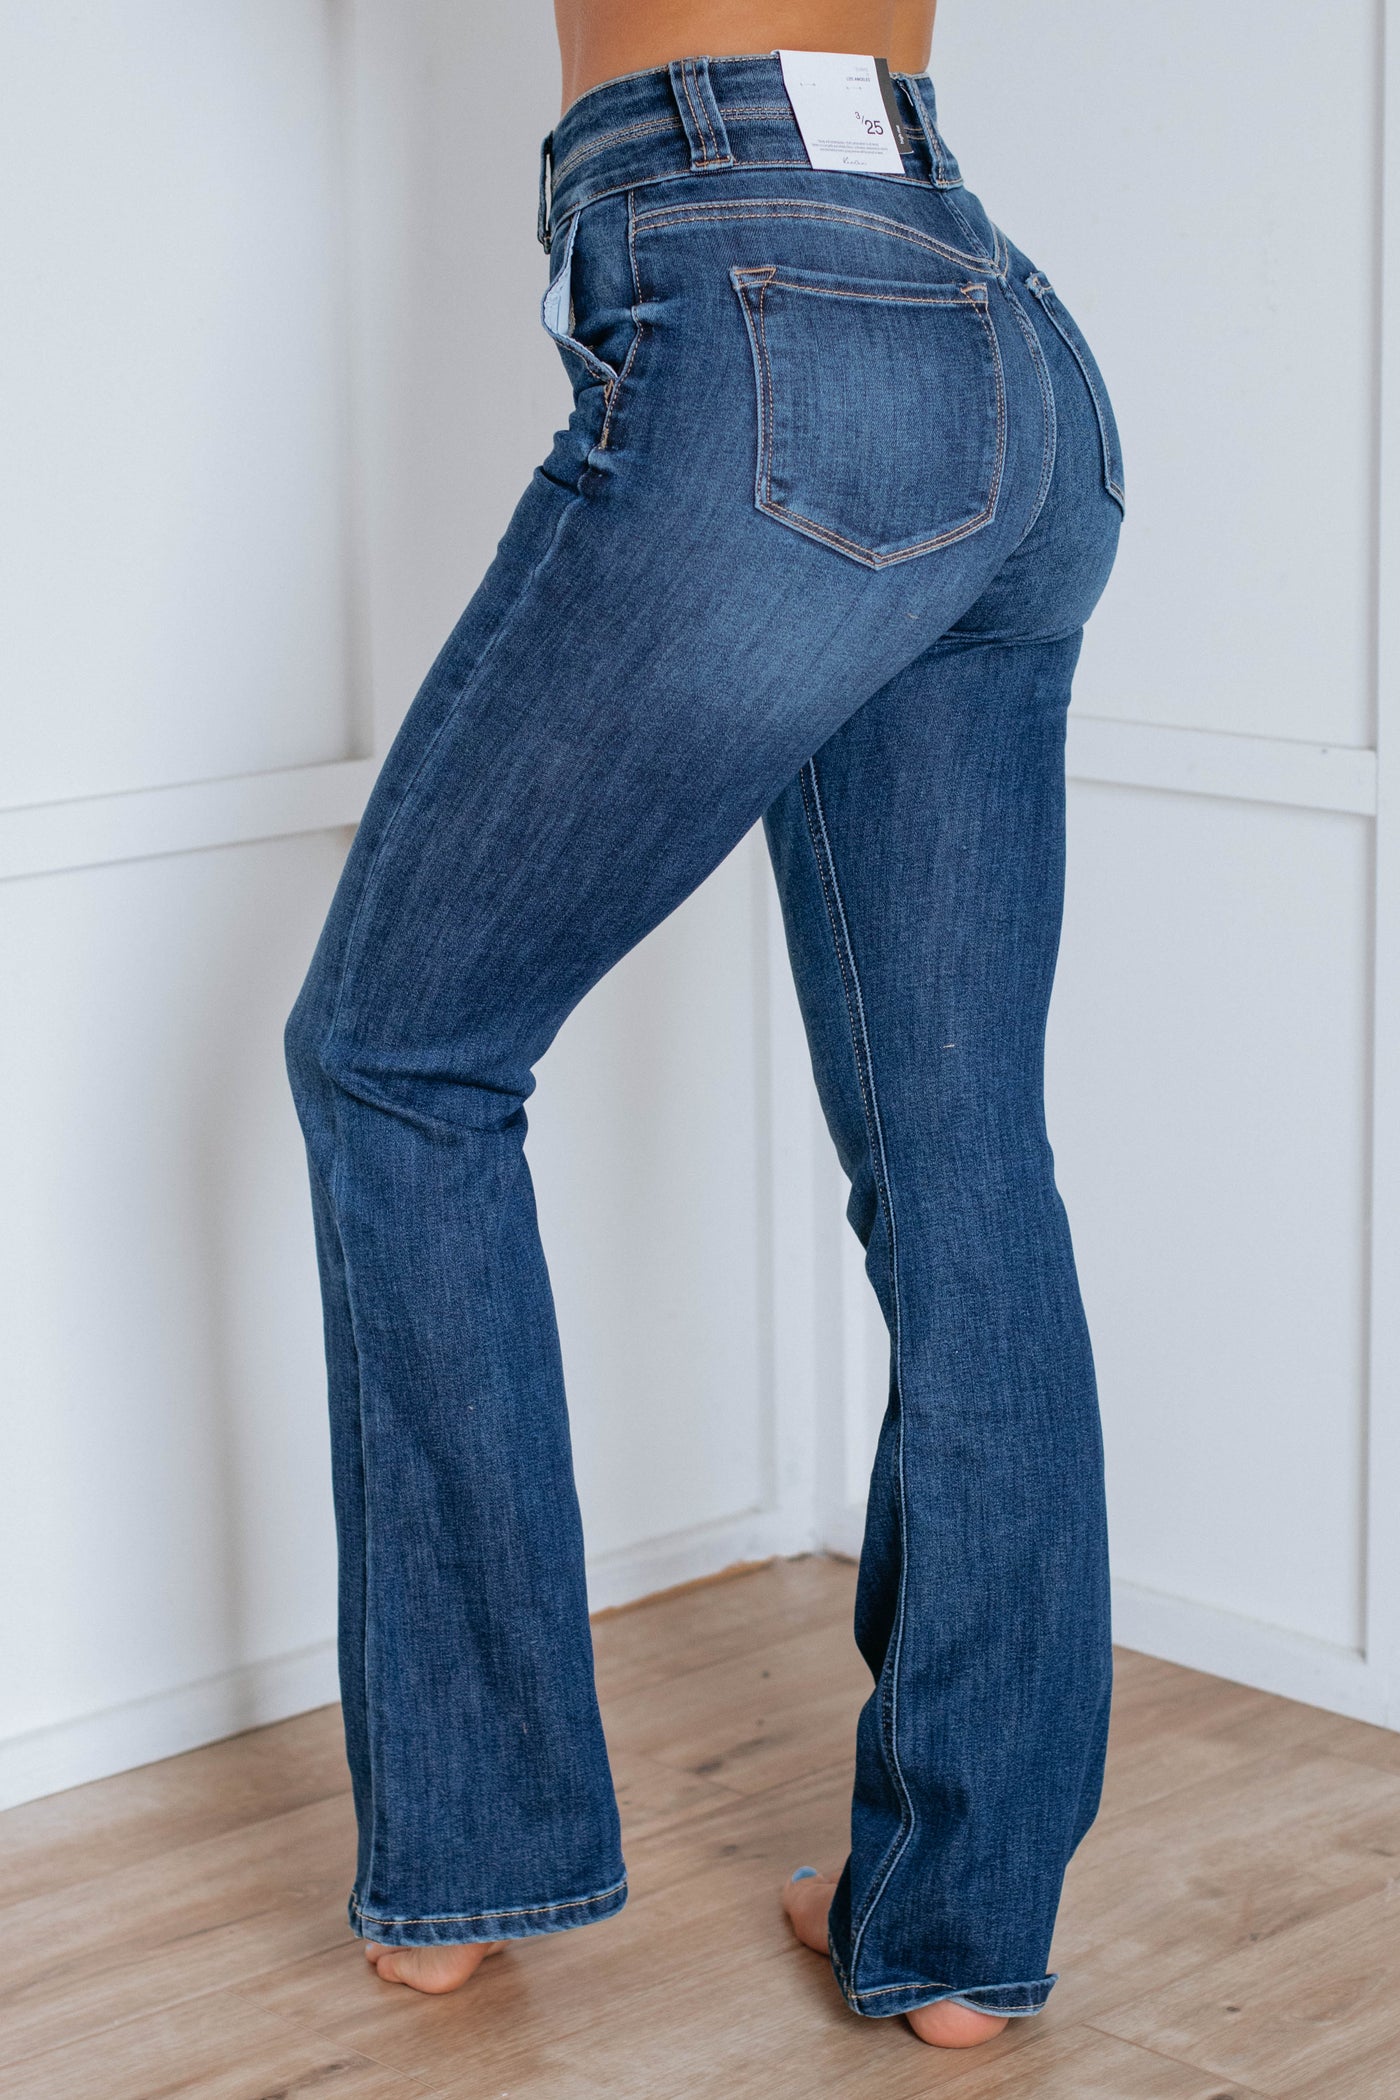 Jaclyn Kan Can Bootcut Jeans – Wild Oak Boutique